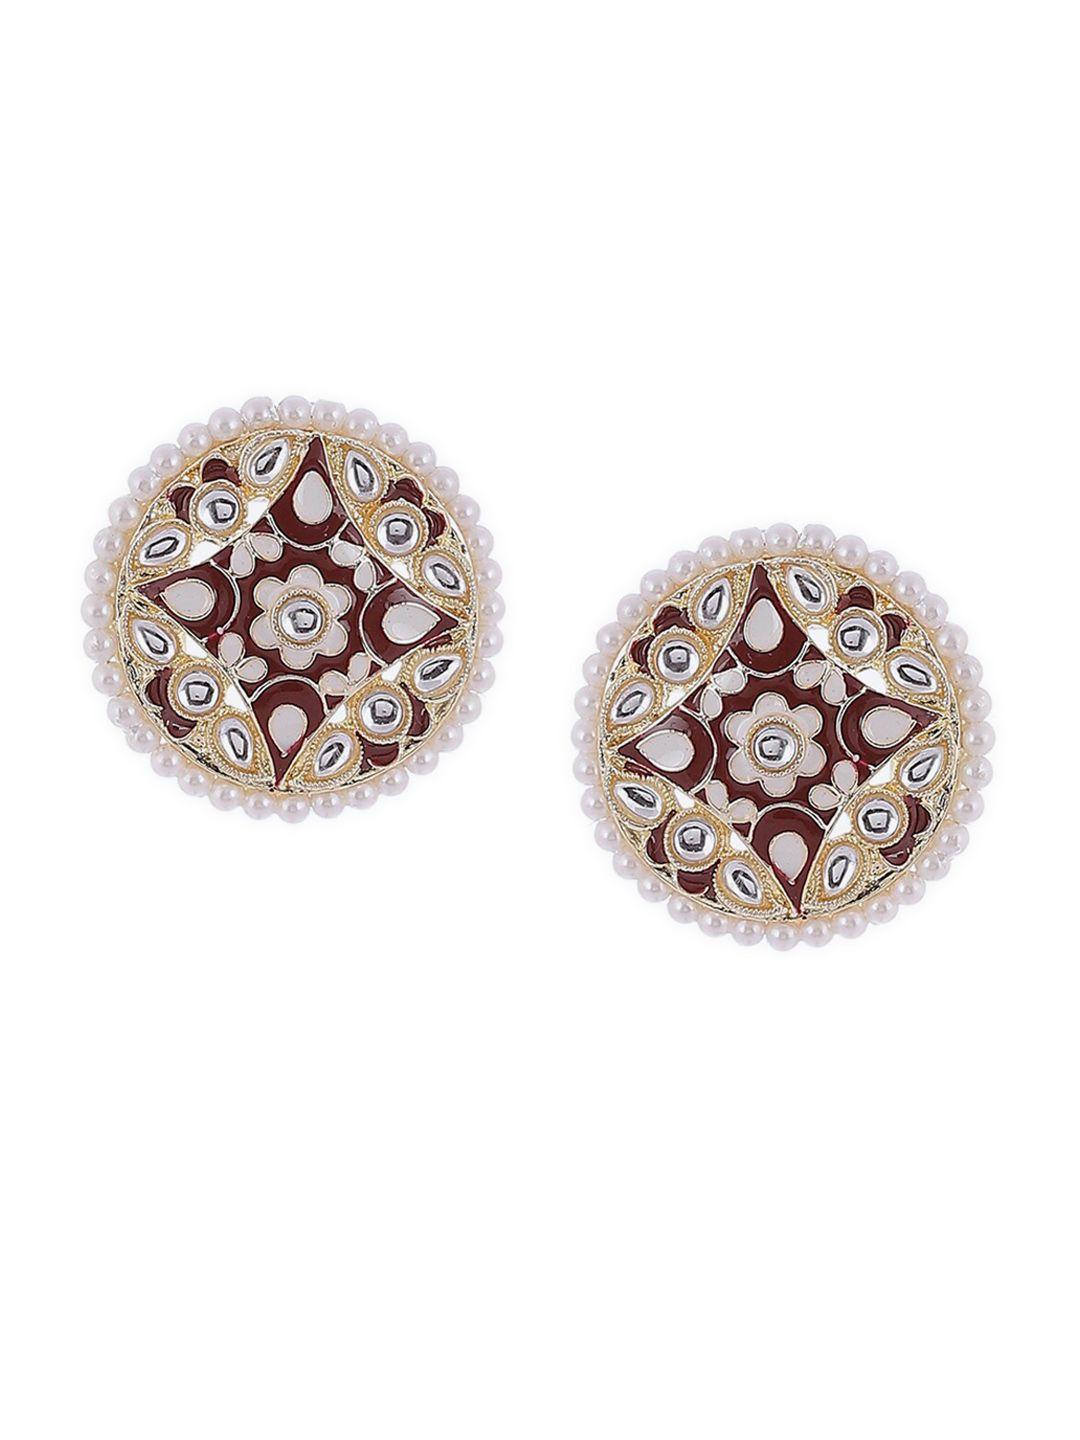 rangriti maroon & gold plated circular studs earrings